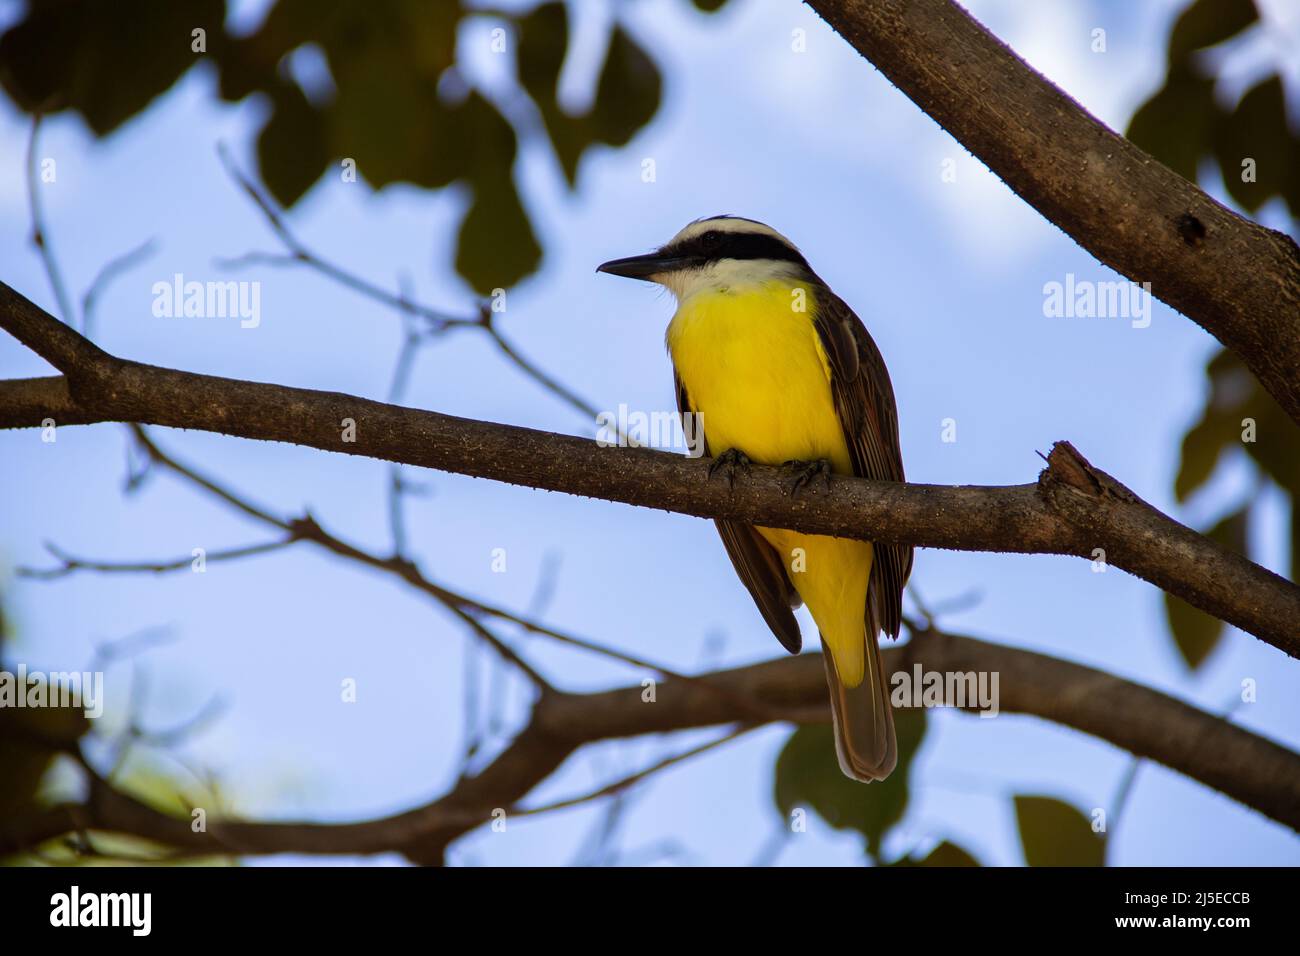 Goiânia, Goias, Brazil – April 22, 2022: A bird perched on the branch of a leafy tree. Pitangus sulphuratus. Stock Photo